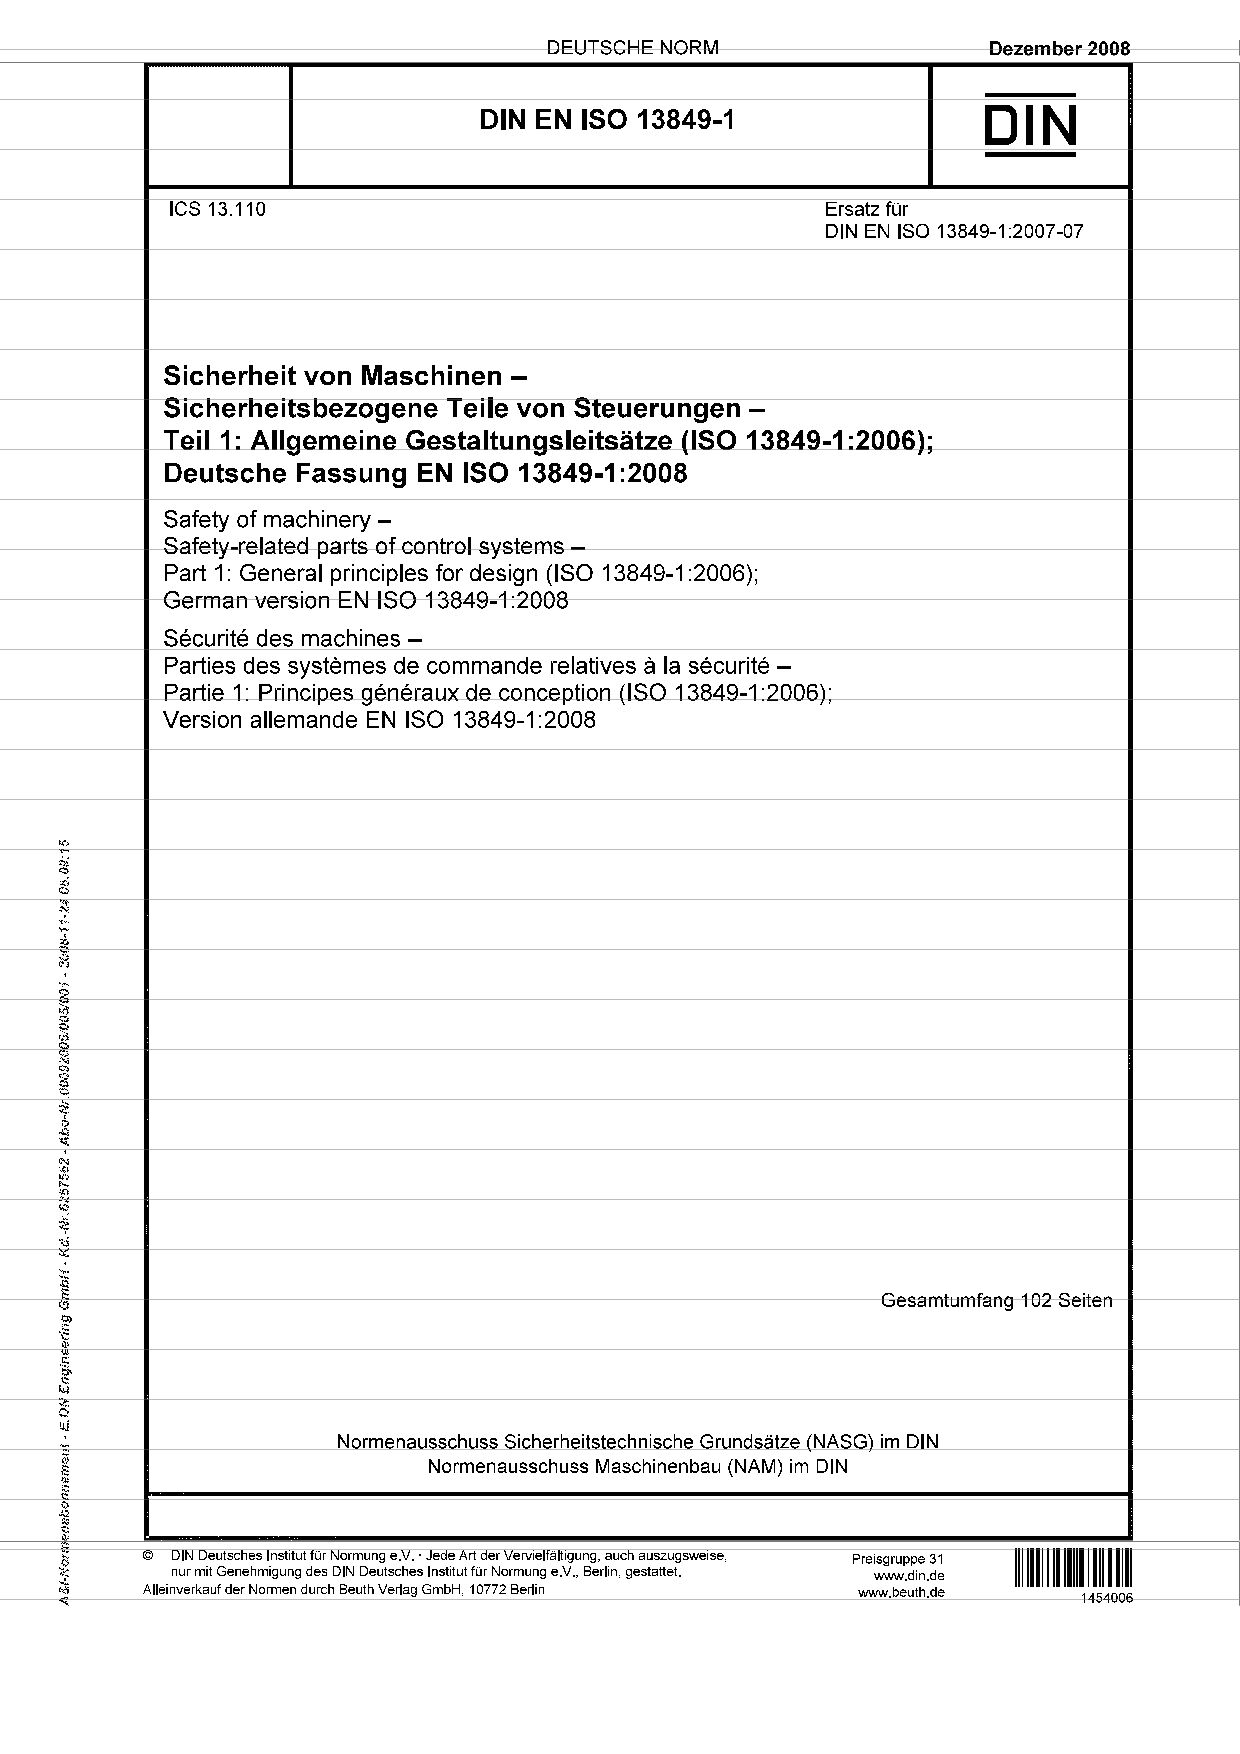 DIN EN ISO 13849-1:2008封面图